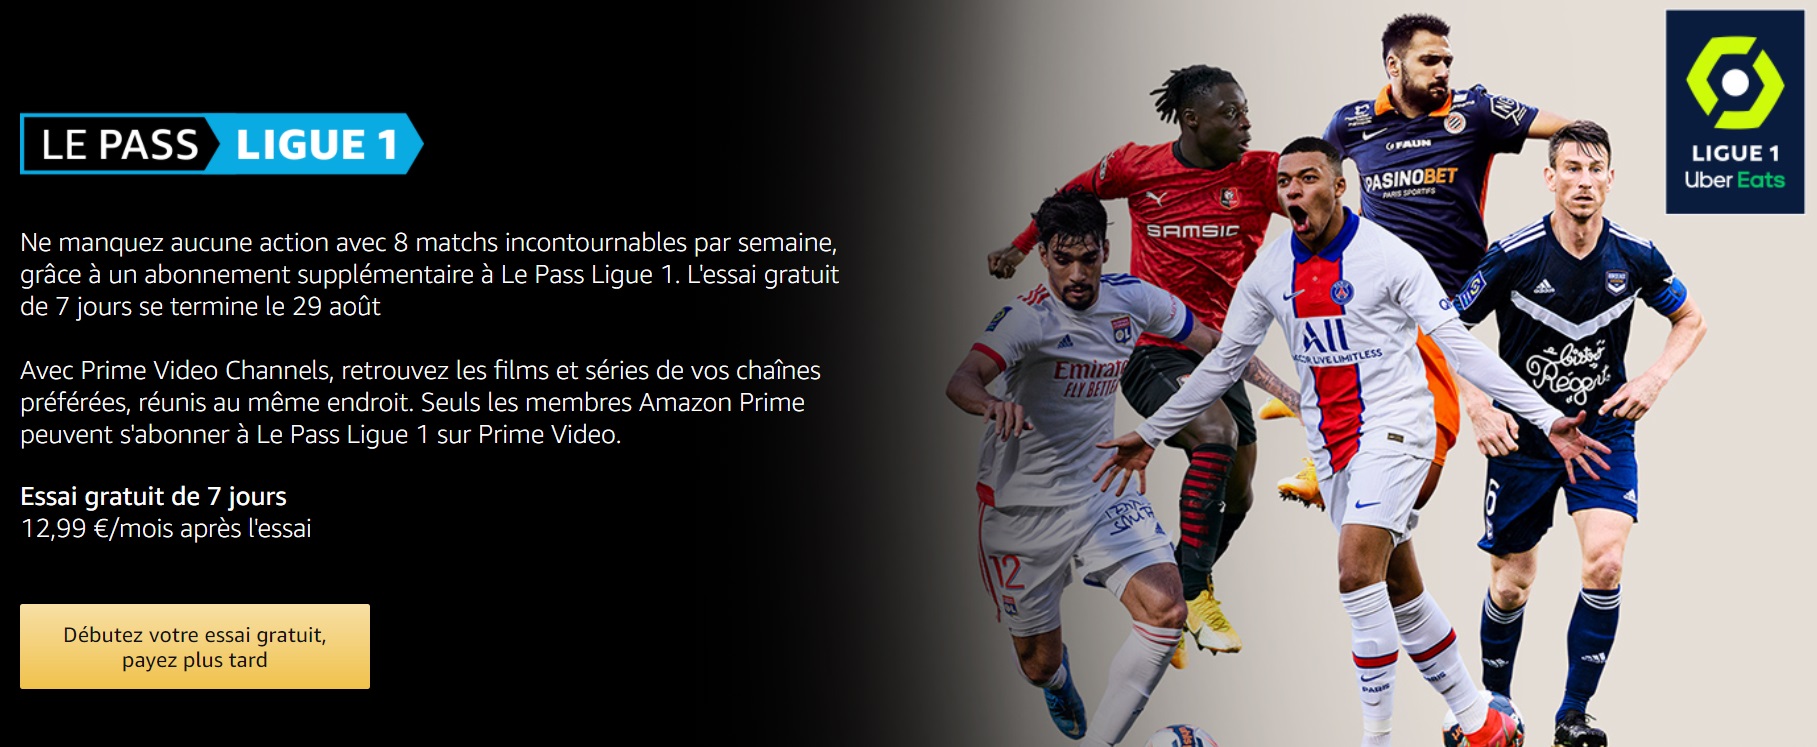 https://www.sportbuzzbusiness.fr/wp-content/uploads/2021/08/offre-essai-gratuit-7-jours-pass-ligue-1-amazon-prime-video-bon-plan.jpg